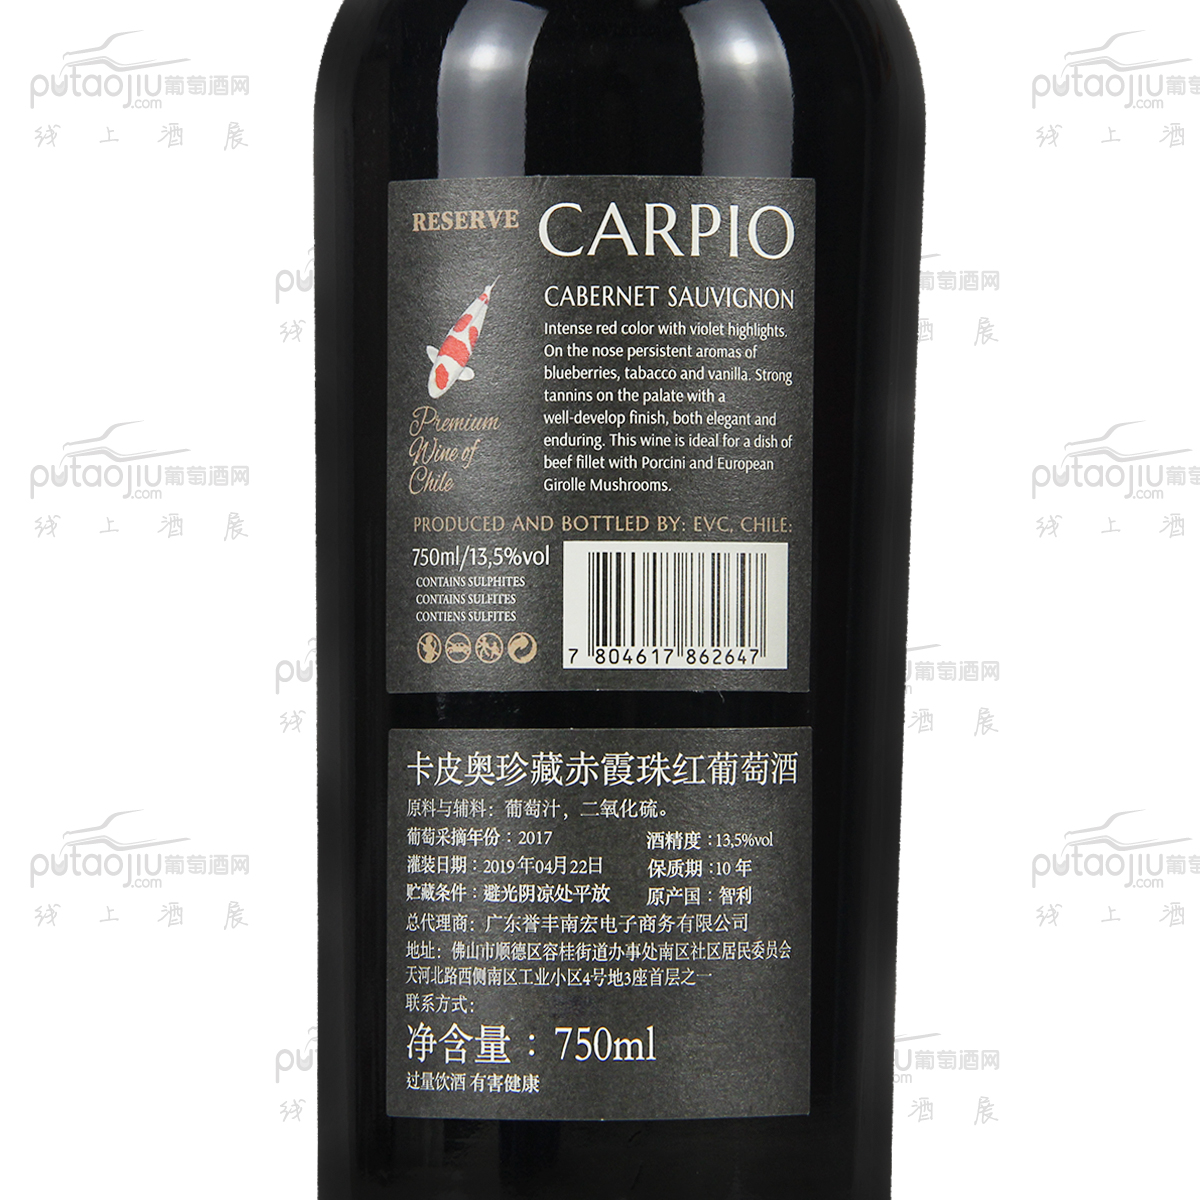 智利中央山谷克莱酒庄卡皮奥赤霞珠珍藏级干红葡萄酒